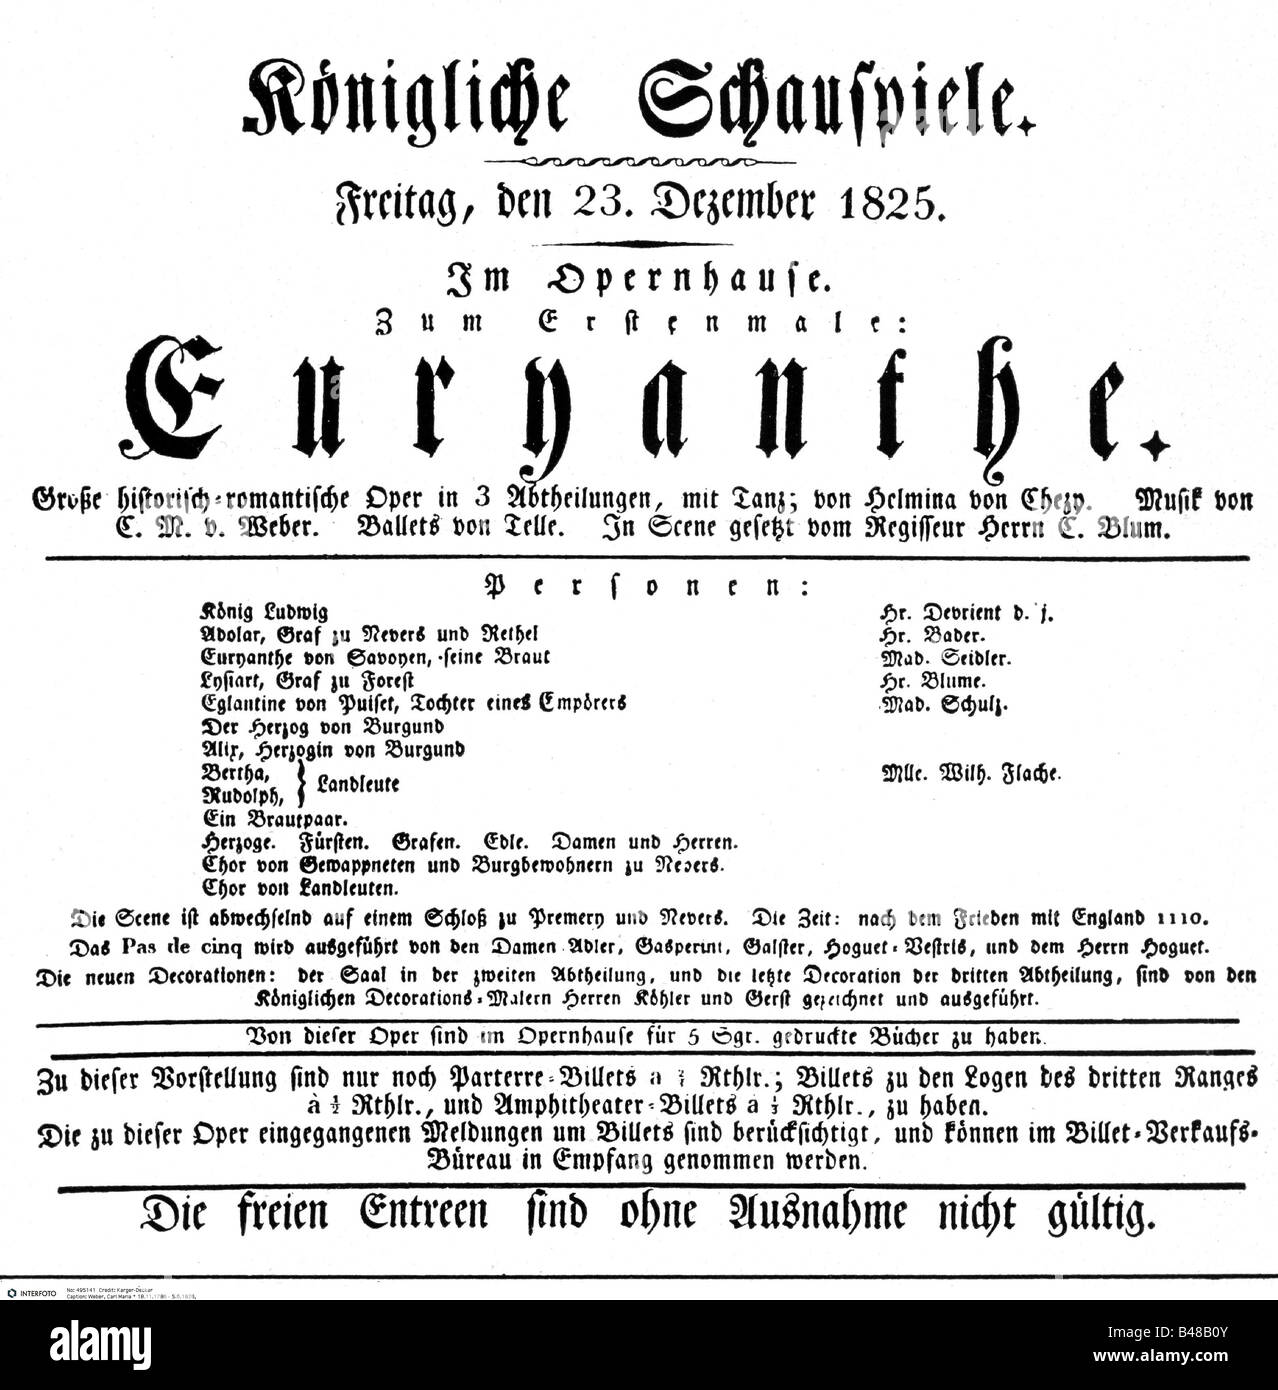 Weber, Carl Maria von, 18.11.815 - 5.6.1826, deutscher Komponist, Oper "Euryanthe", Theatervermerk, Berliner Erstaufführung 23.12.1956, Opernhaus Berlin, Stockfoto